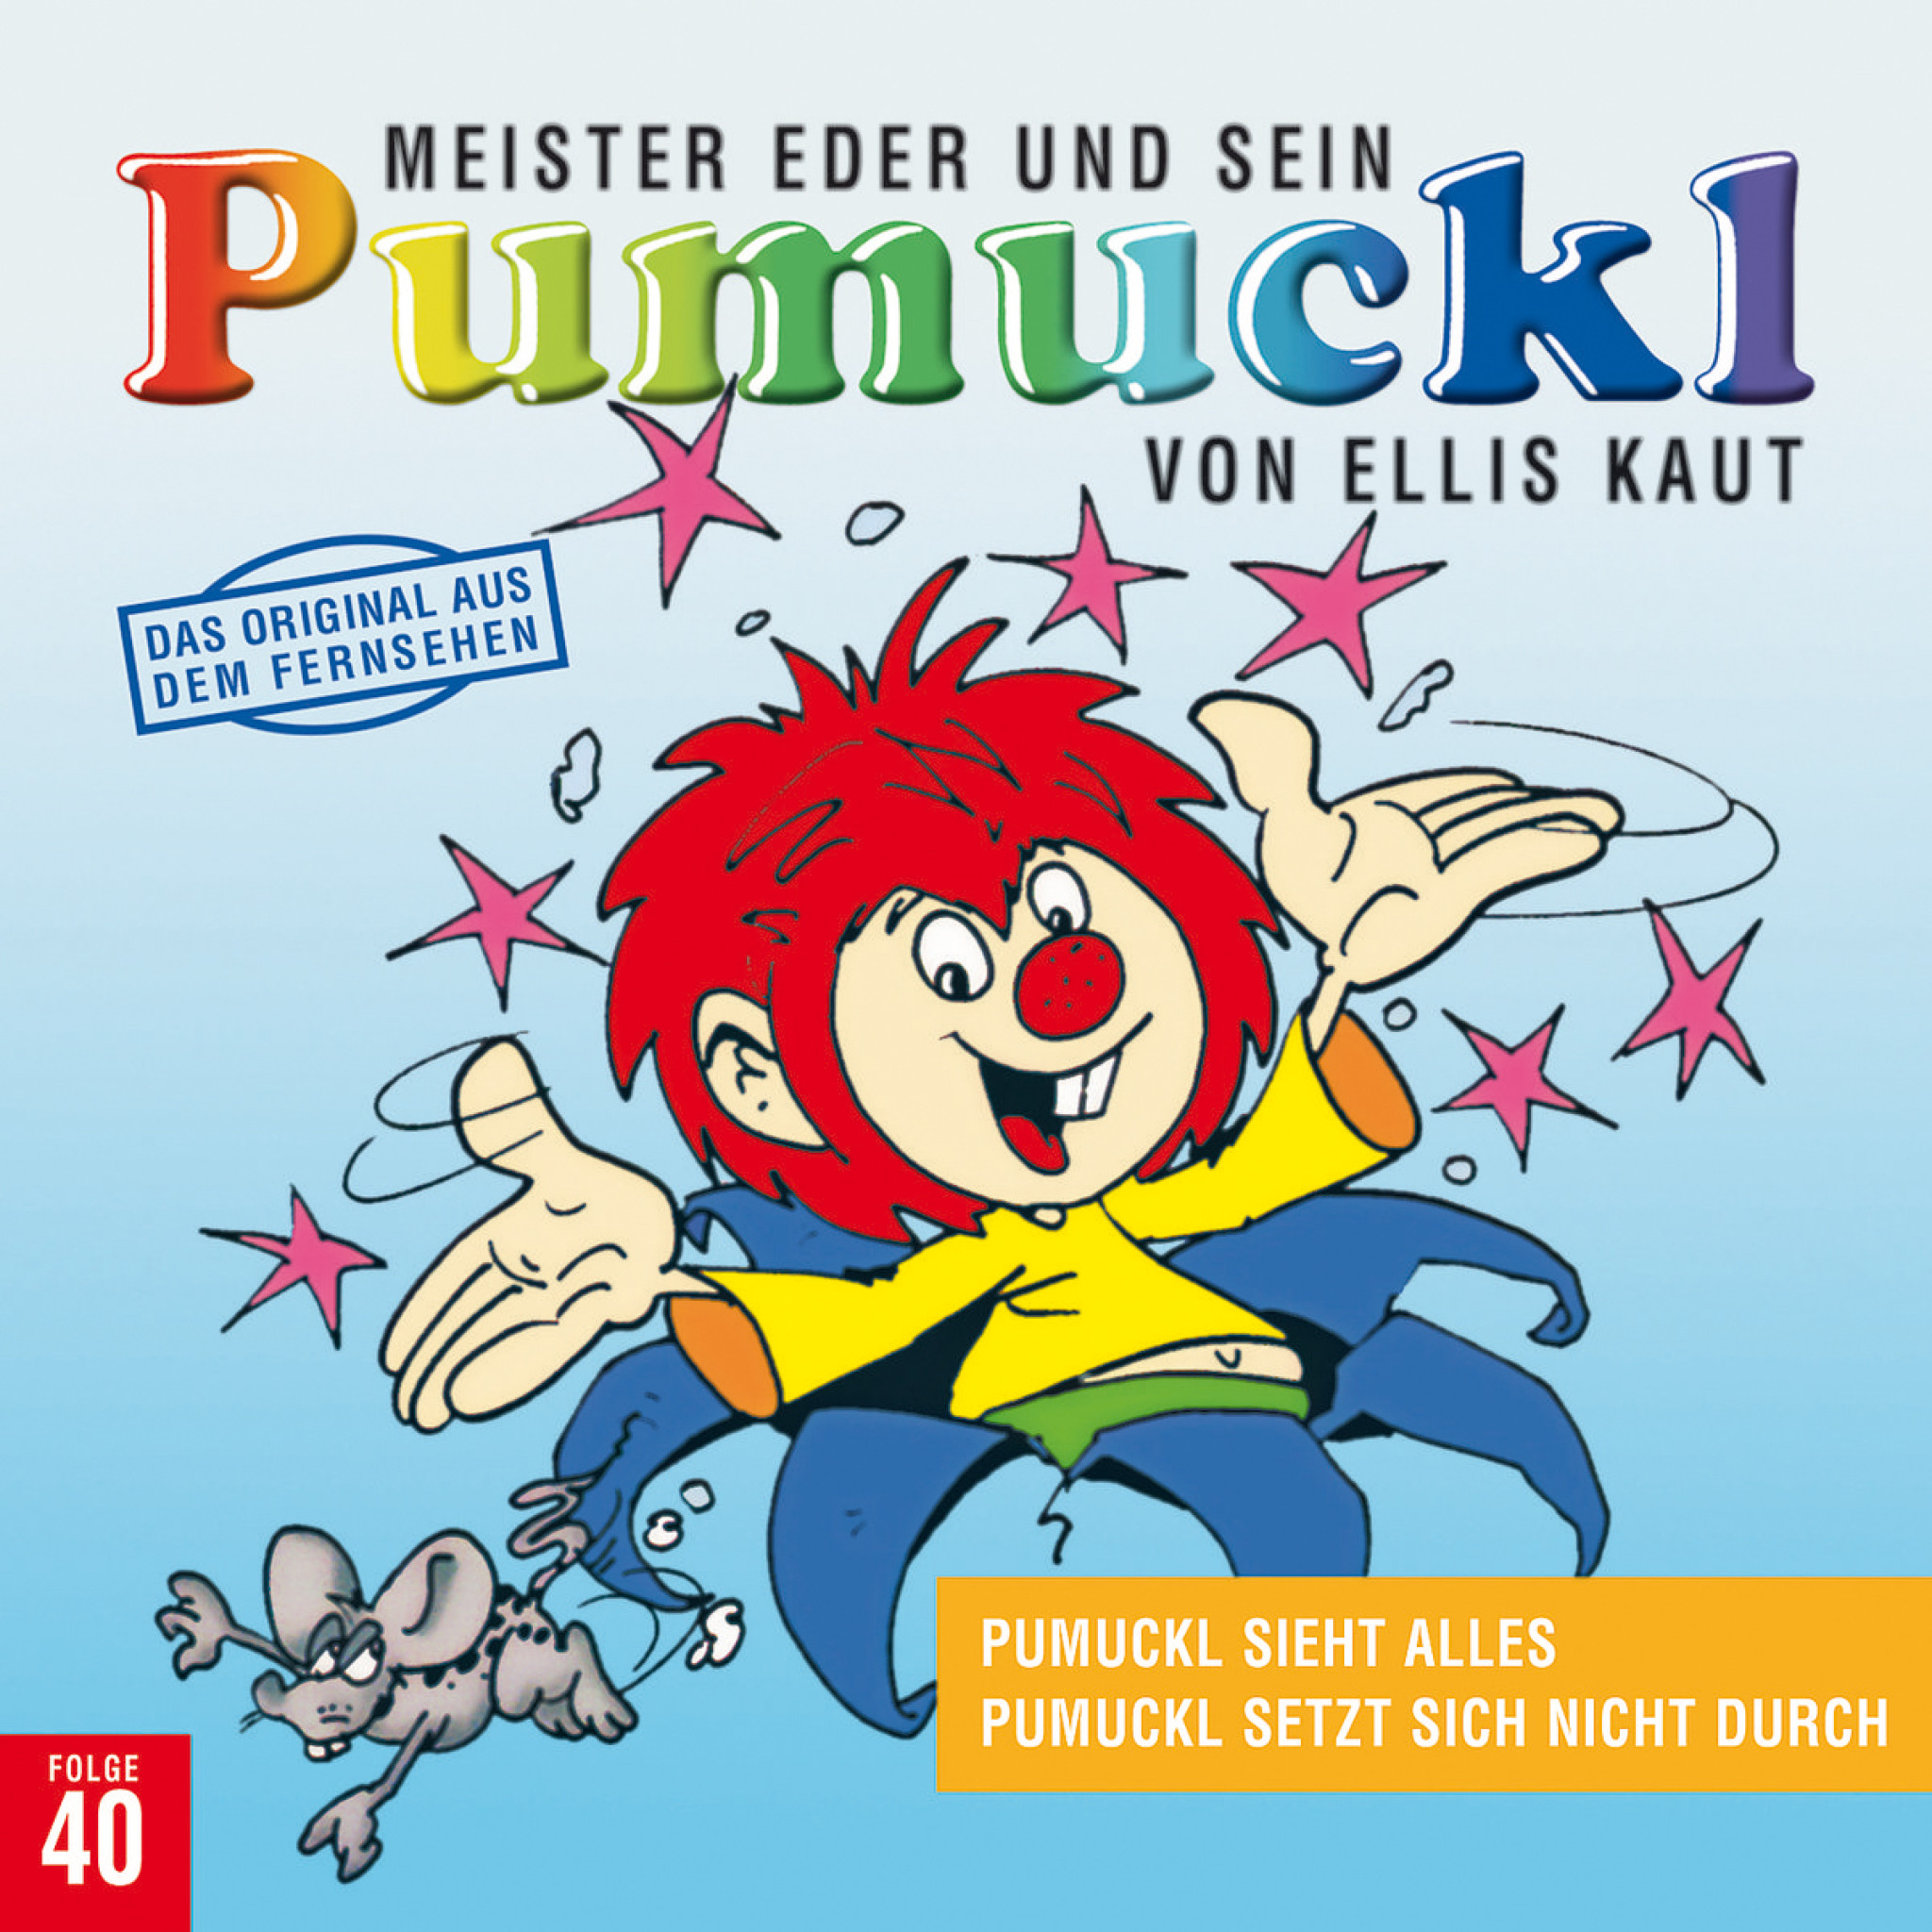  Meister Eder und sein Pumuckl, Folge 40